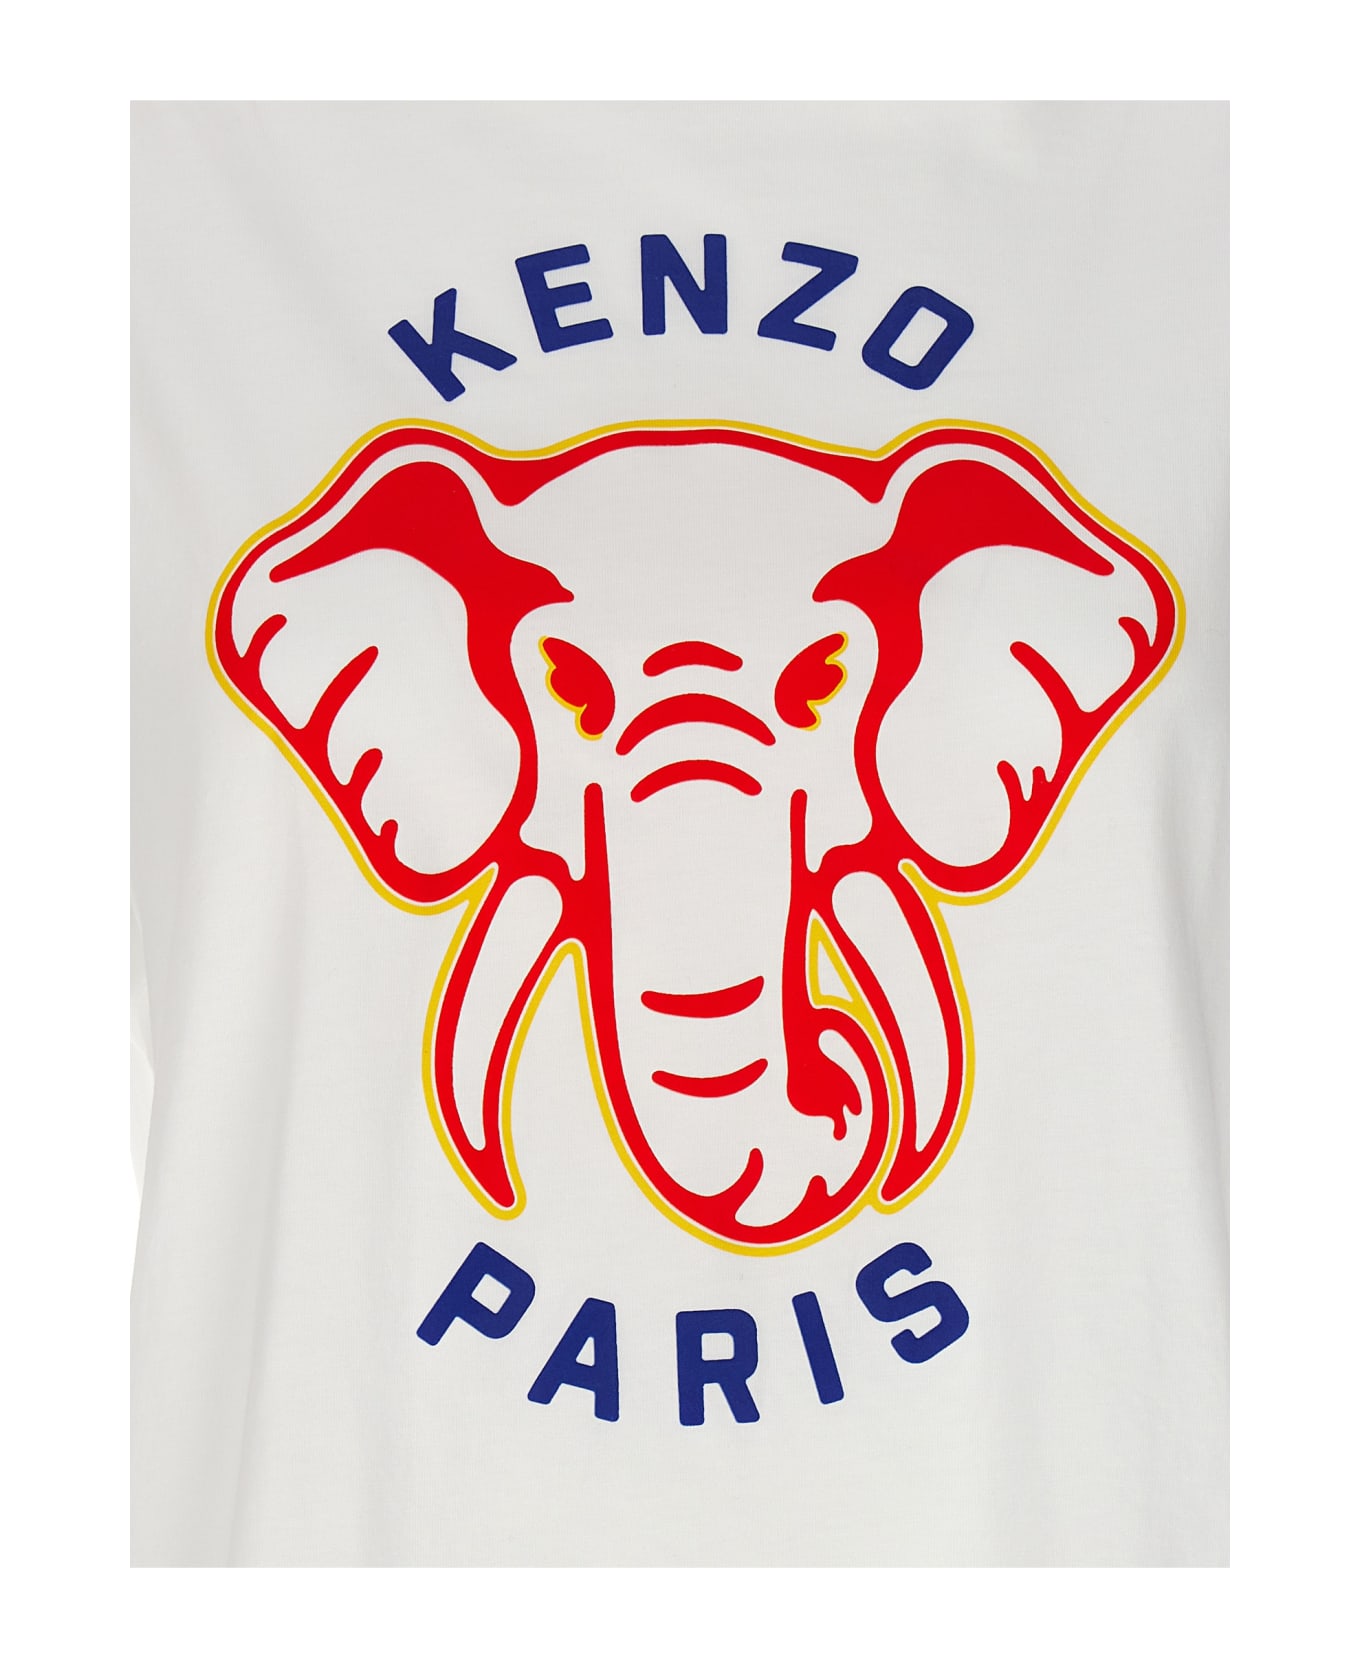 Kenzo Elephant T-shirt - OFF WHITE